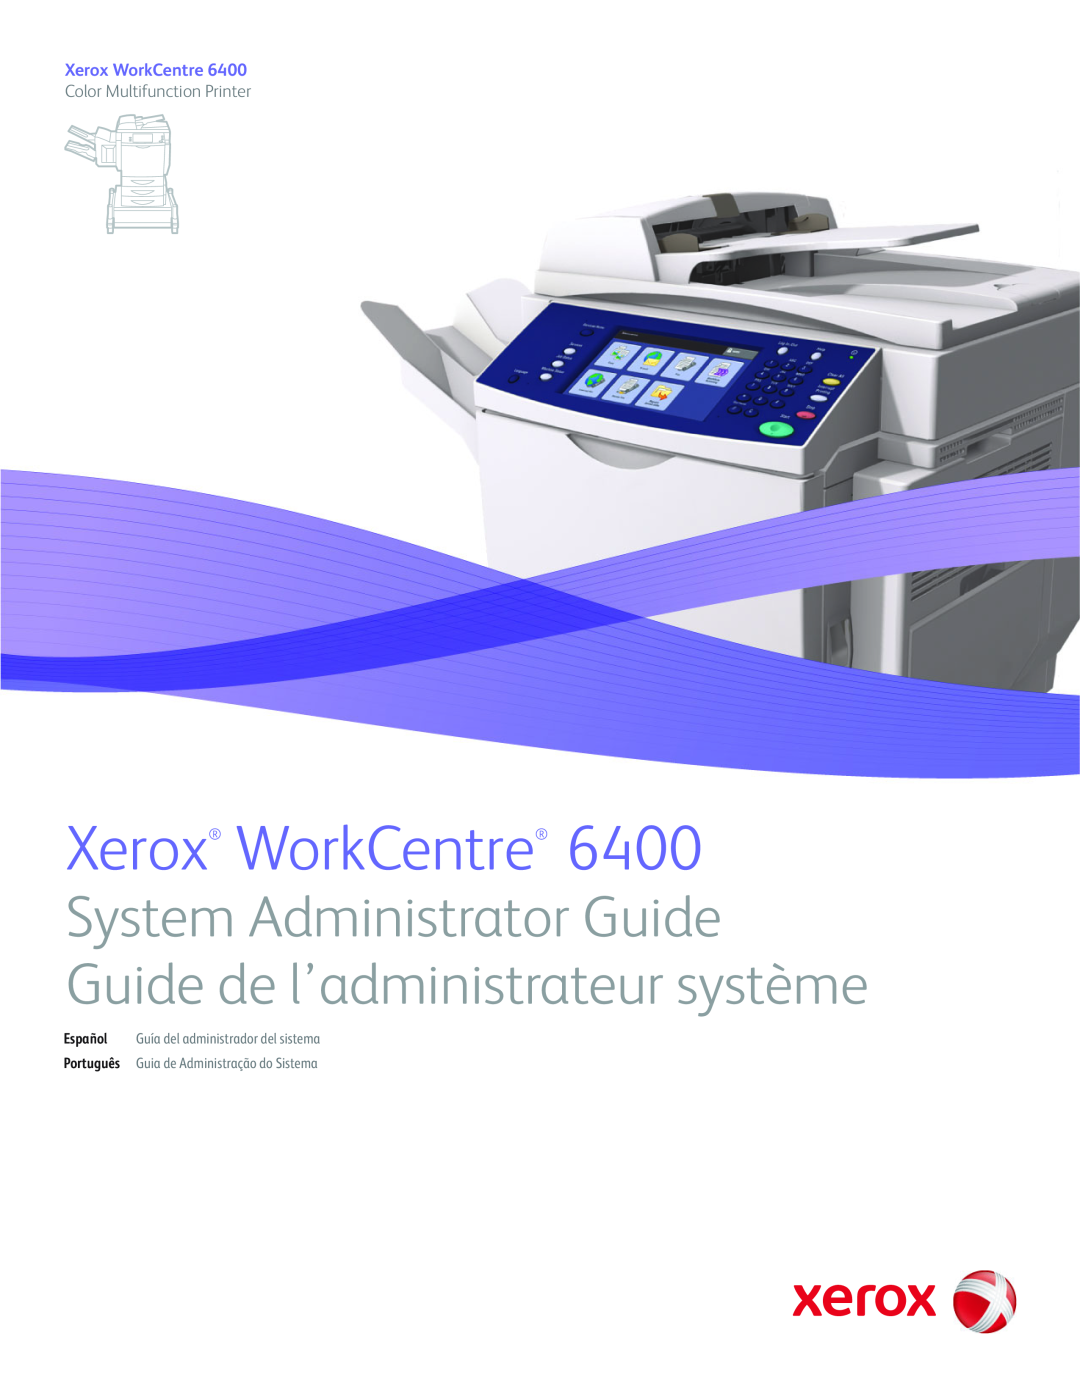 Xerox 6400 manual Xerox WorkCentre, Color Multifunction Printer, Español Guía del administrador del sistema 